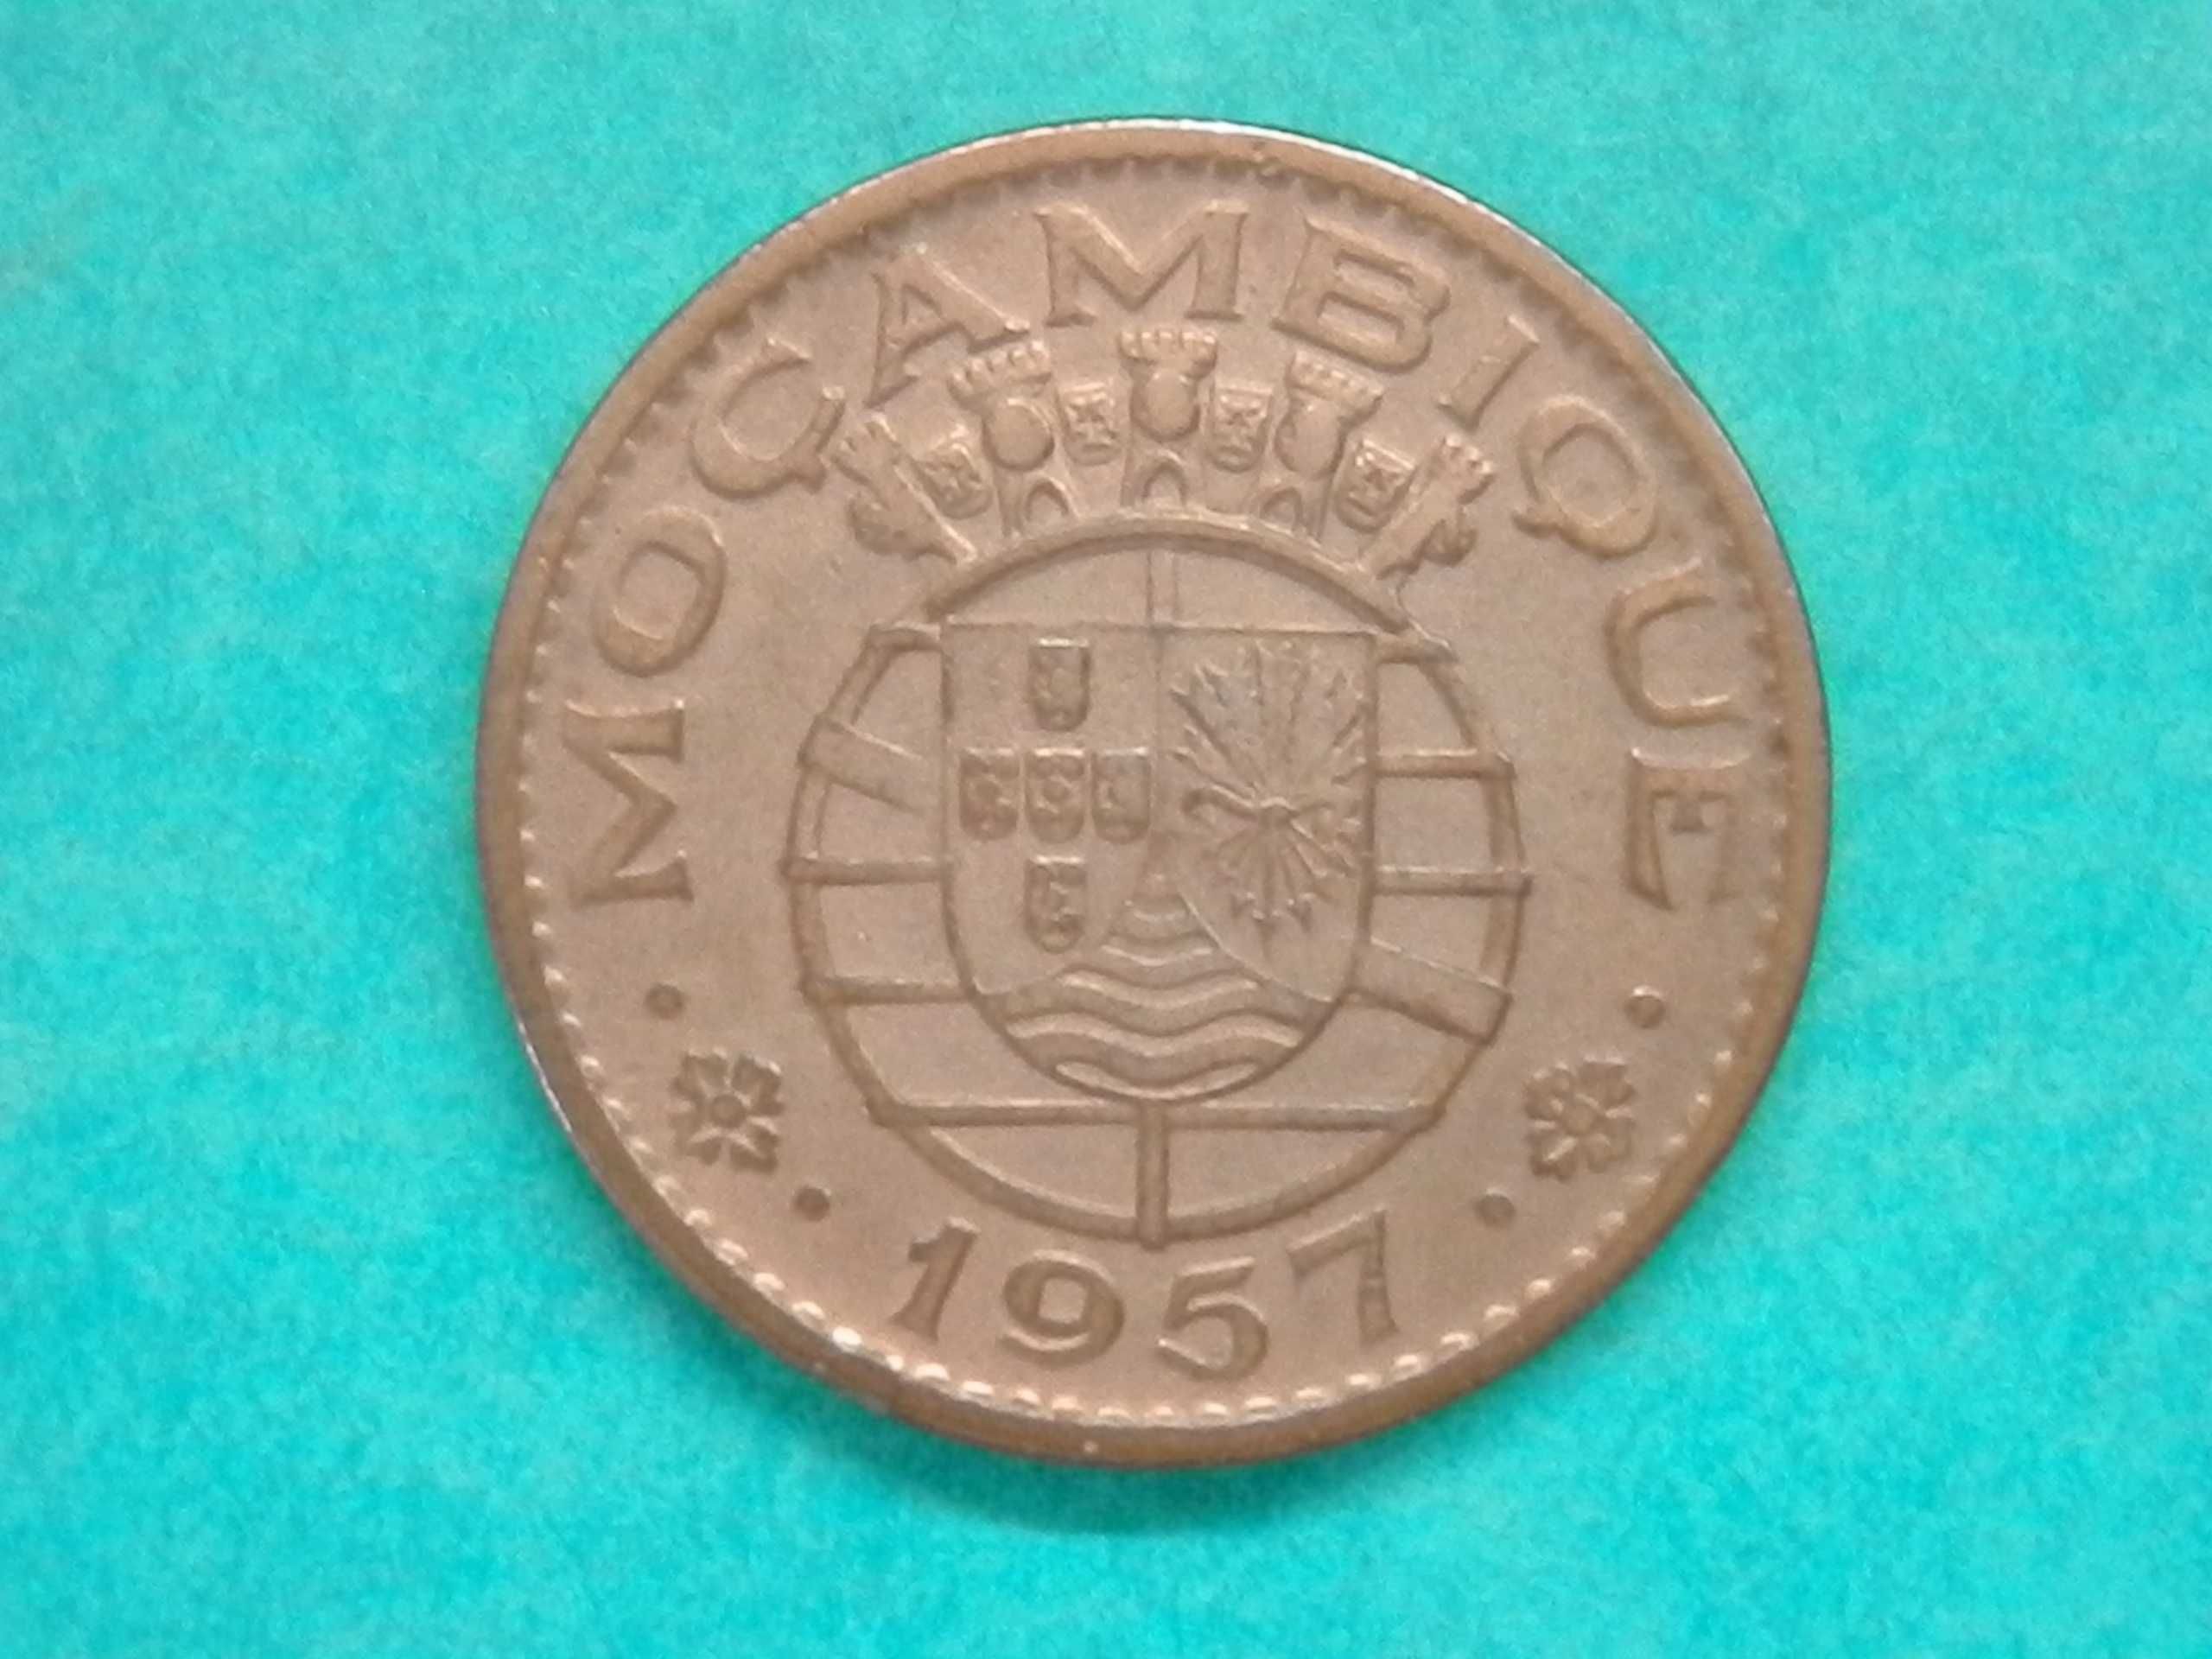 508 - Moçambique: 1 escudo 1957 bronze, por 9,00